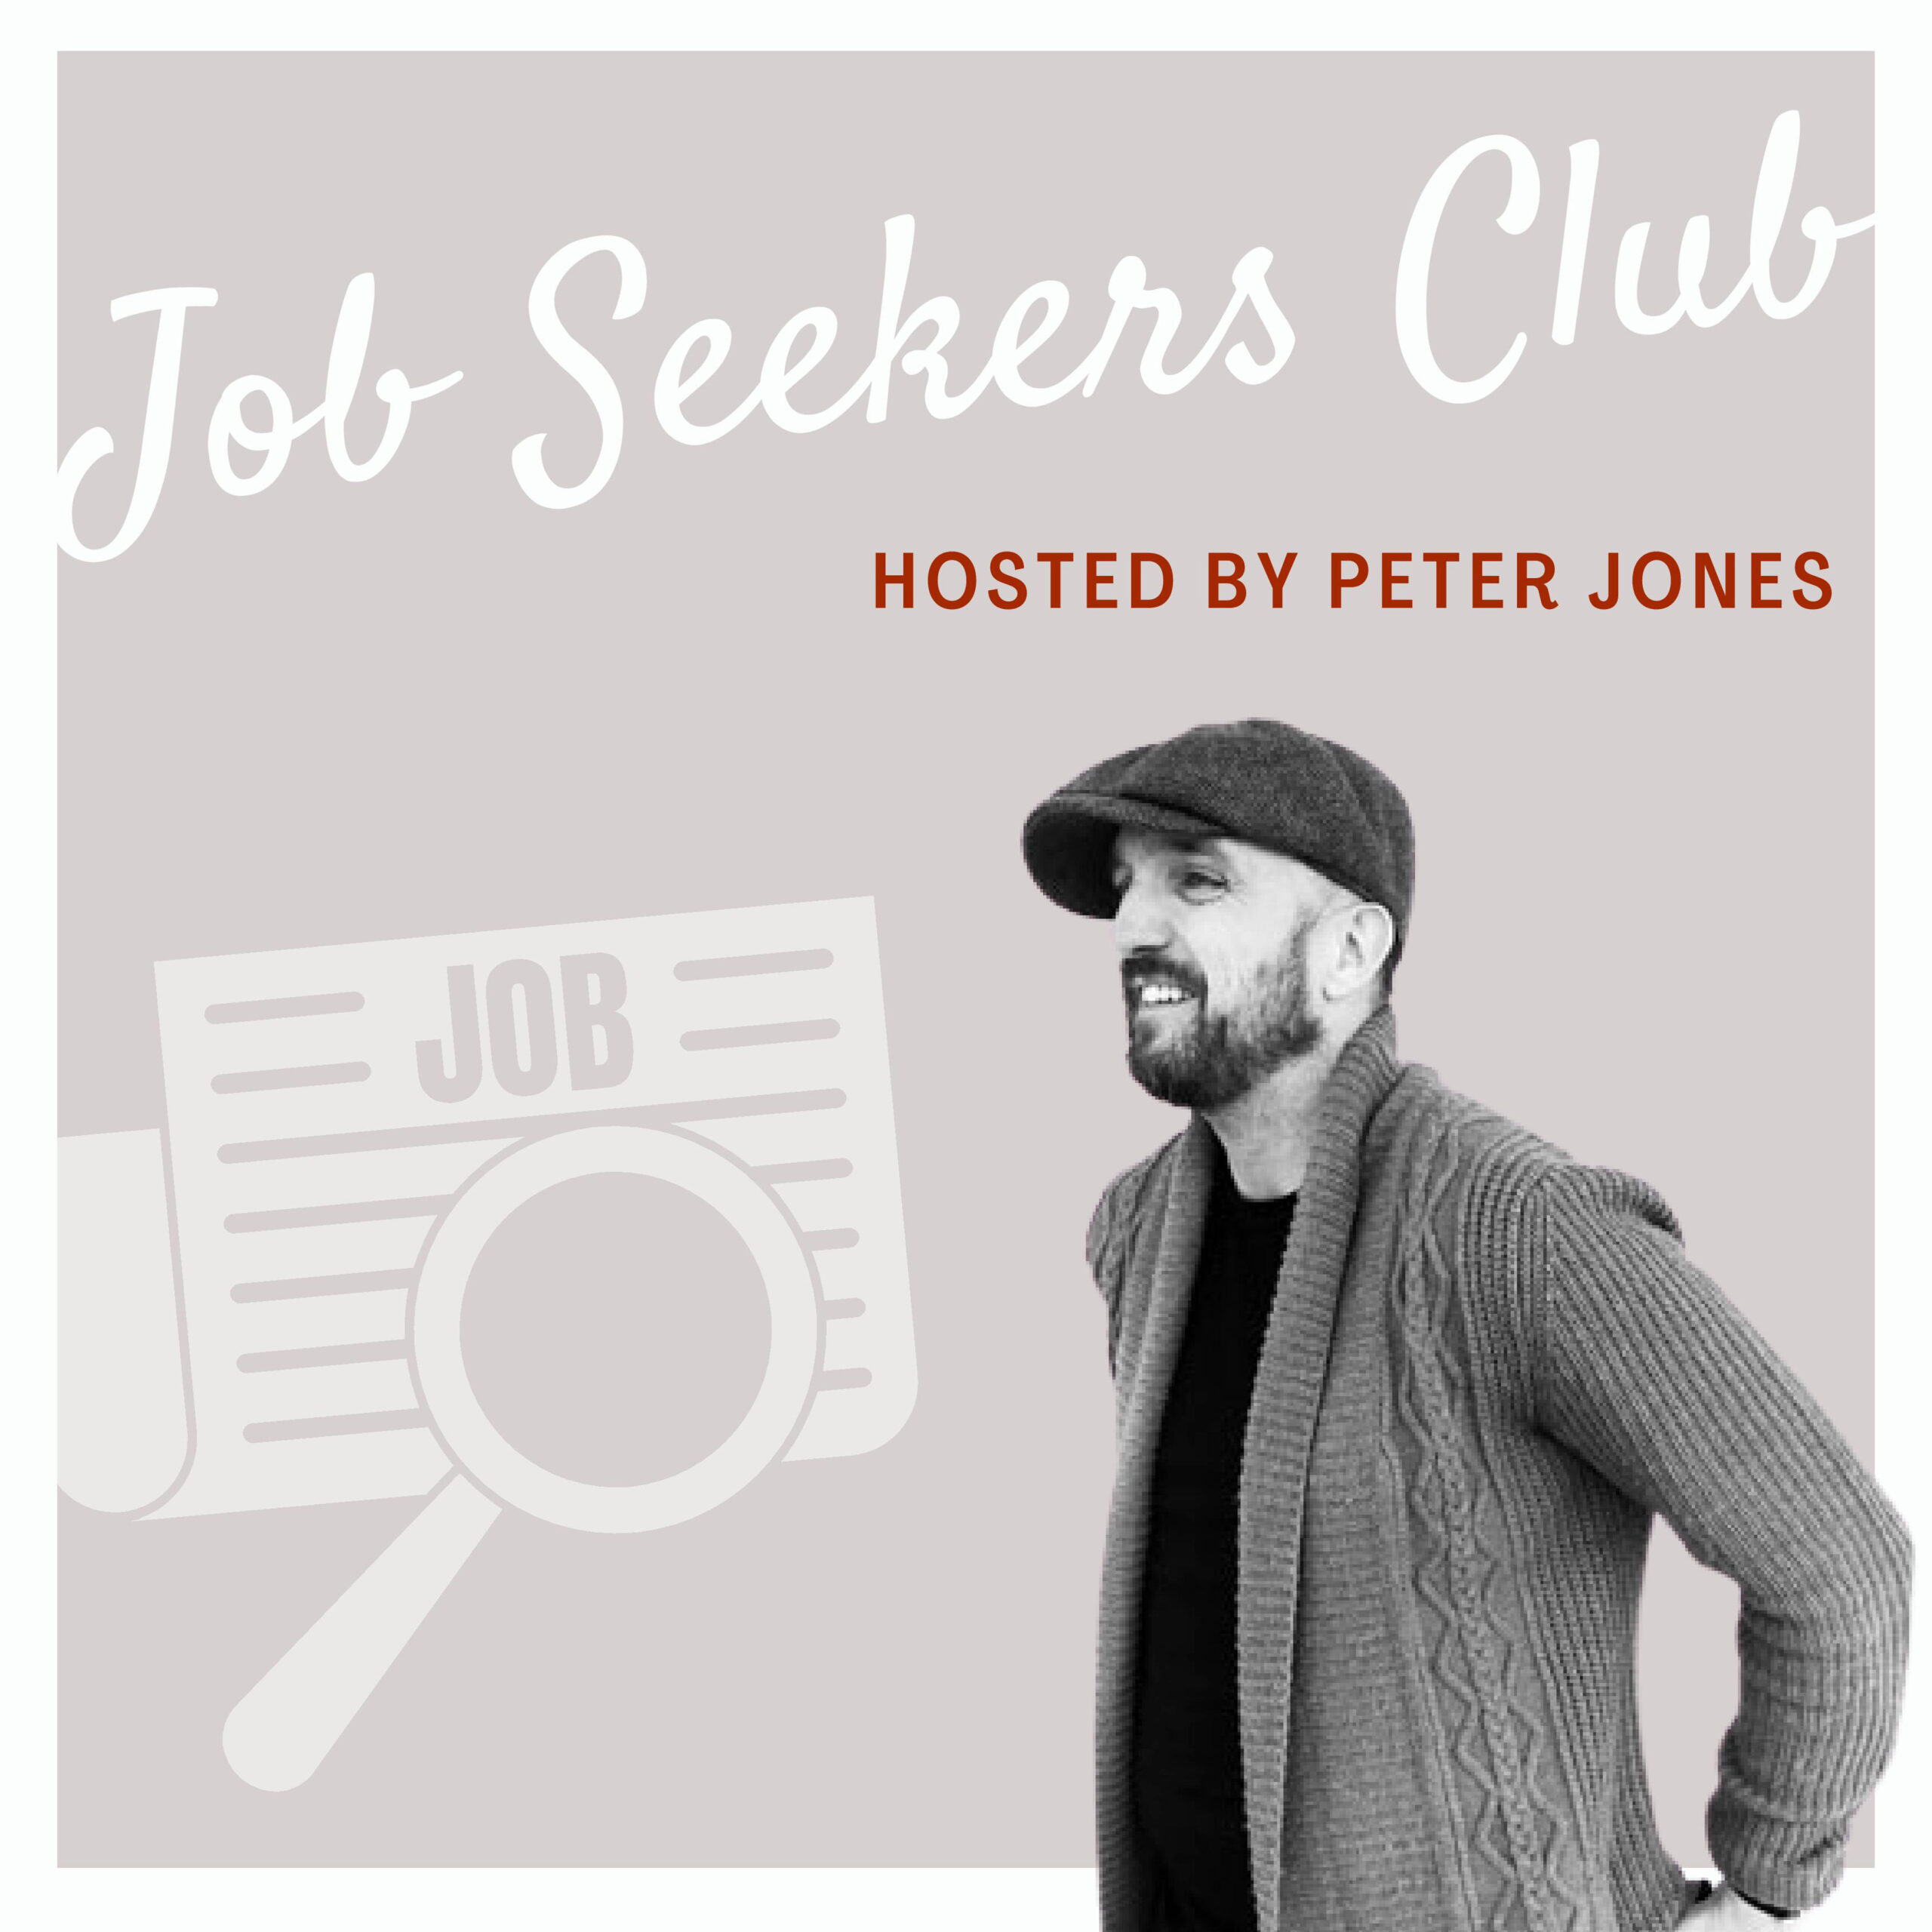 _Weekly Job Seekers Club by Foyne Jones – HR